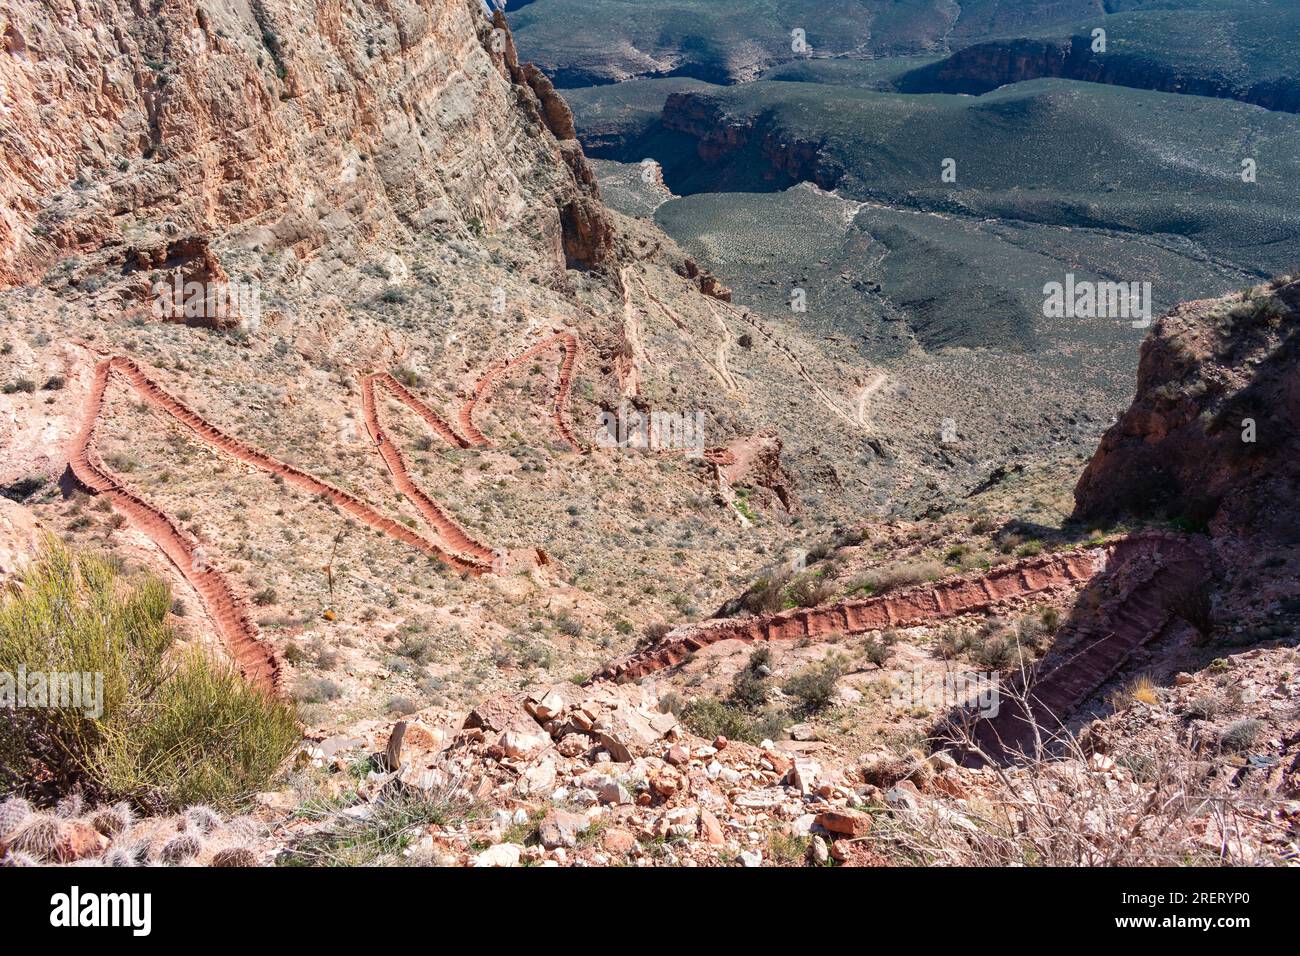 Le pittoresque South Kaibab Trail menant à Skeleton point, offrant une vue imprenable sur le Grand Canyon. Banque D'Images